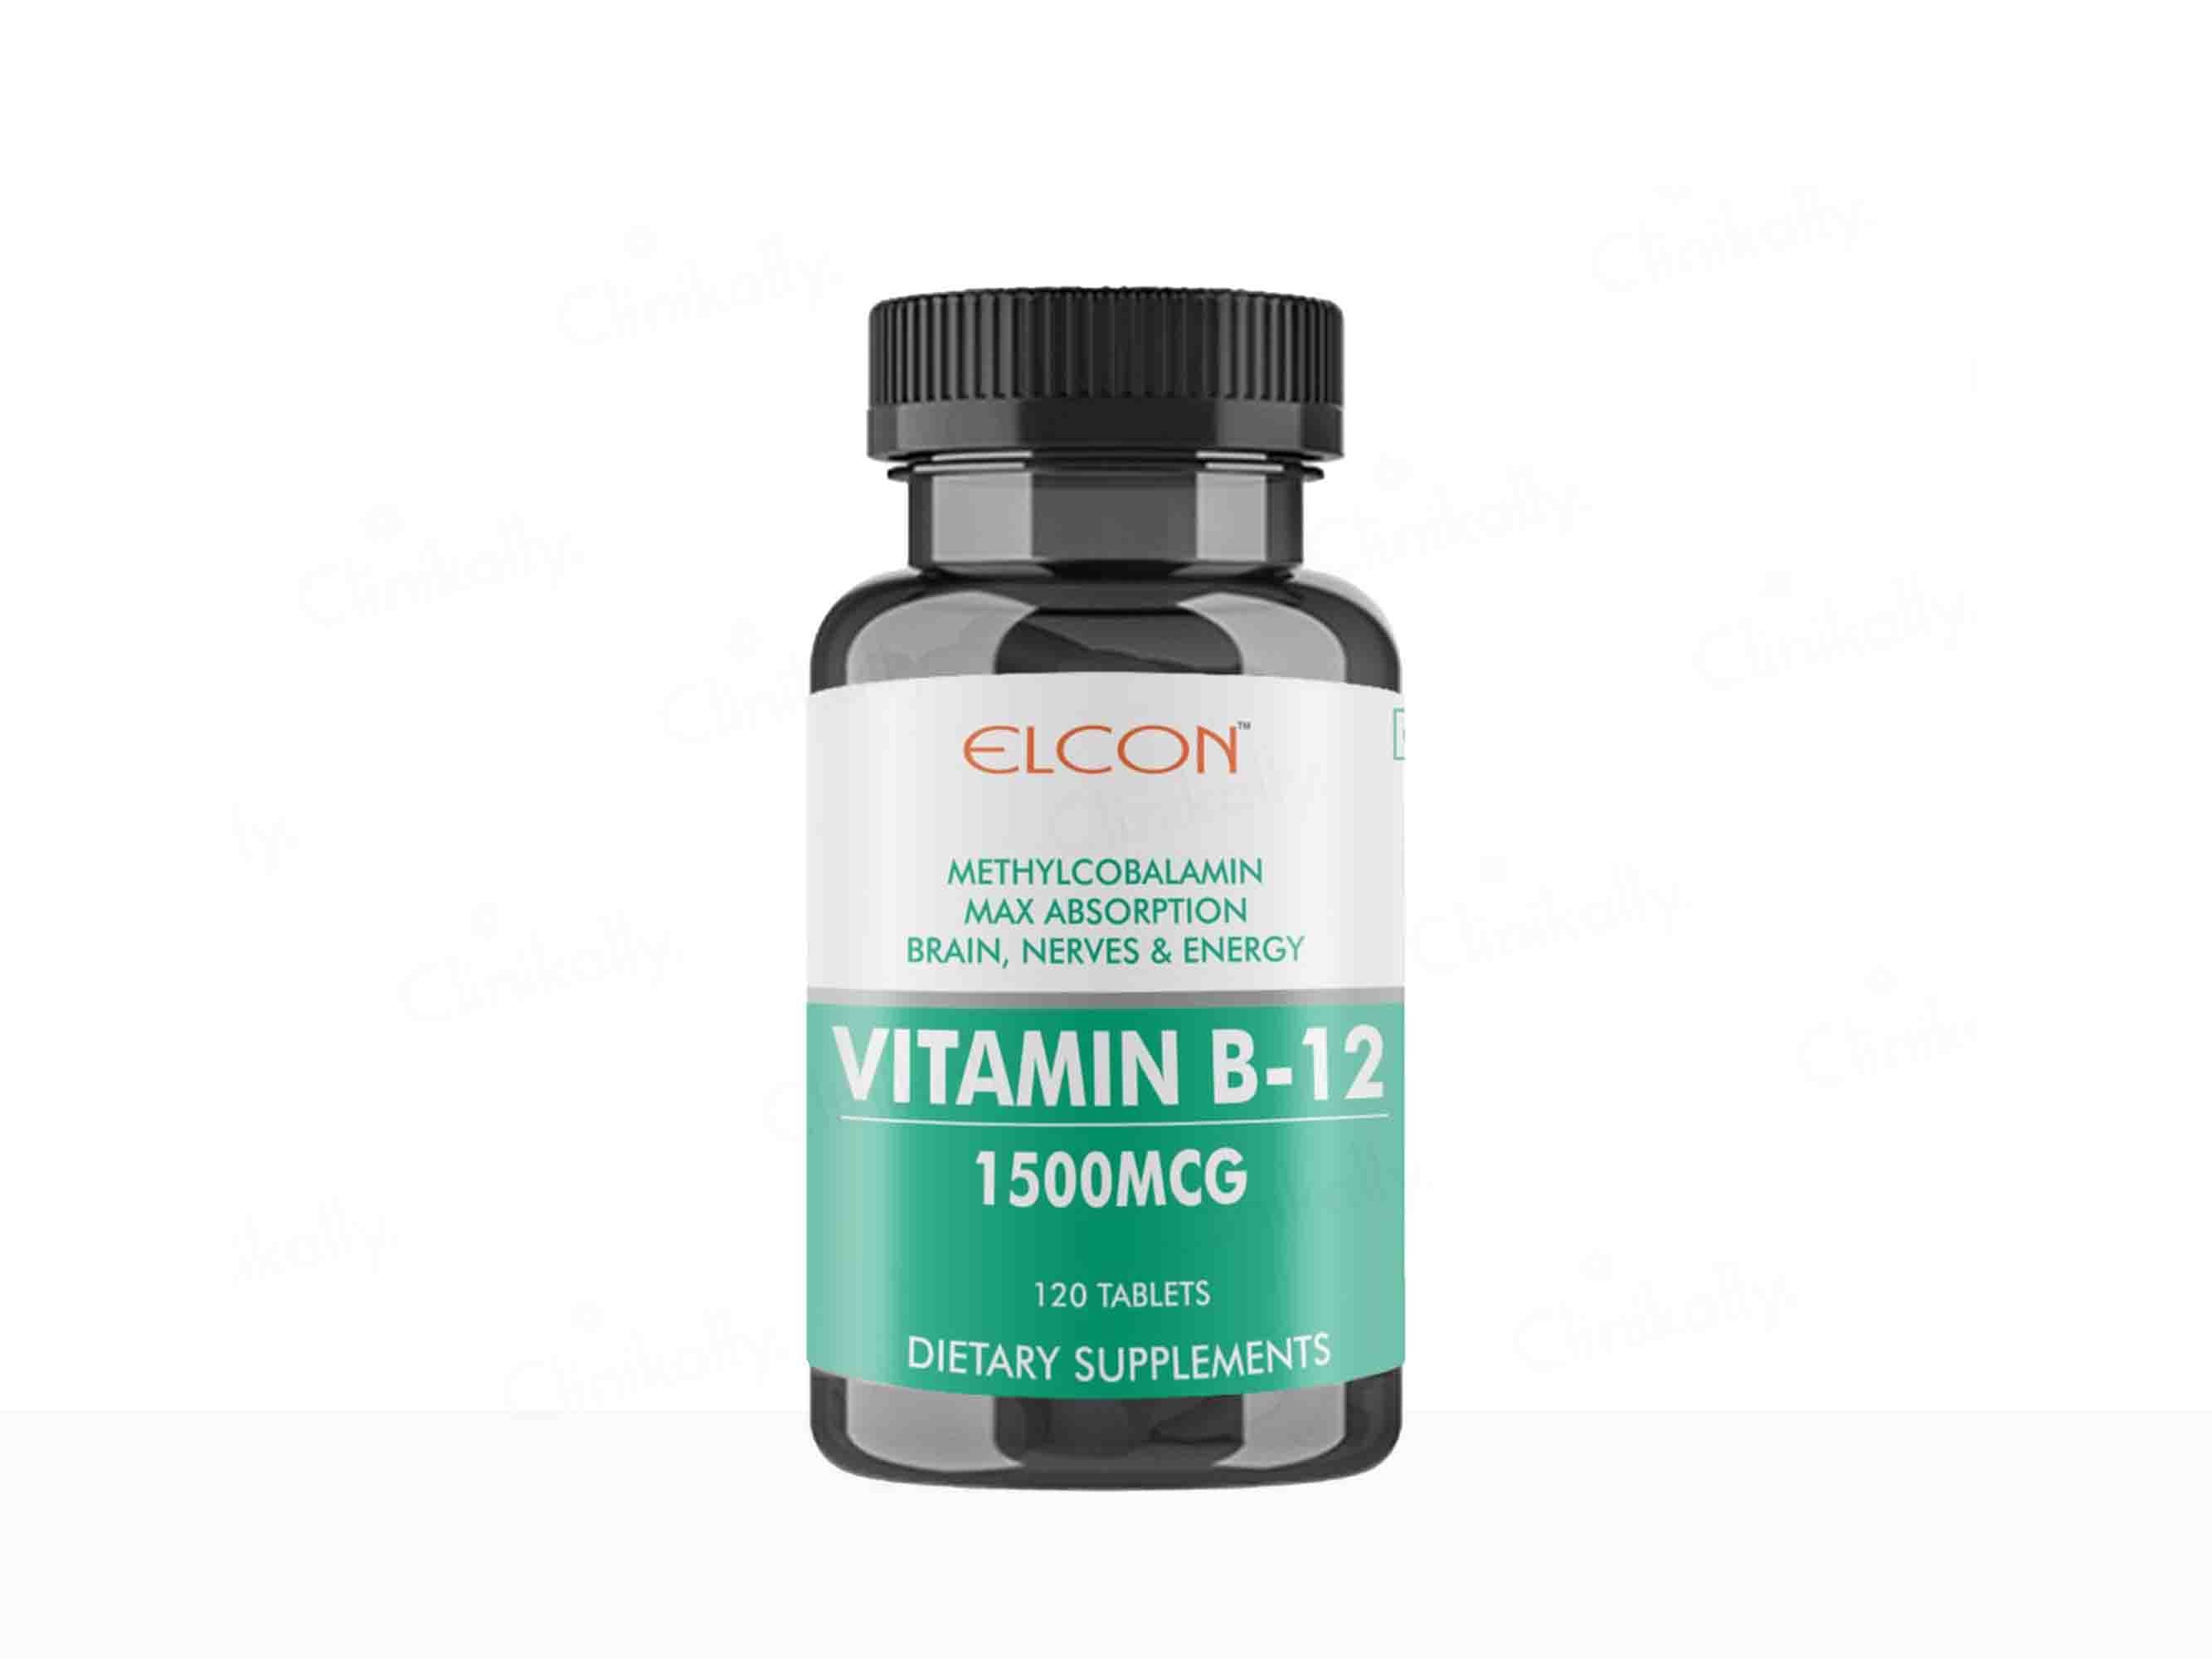 Elcon Vitamin B-12 1500mcg (Methylcobalamin) Tablet